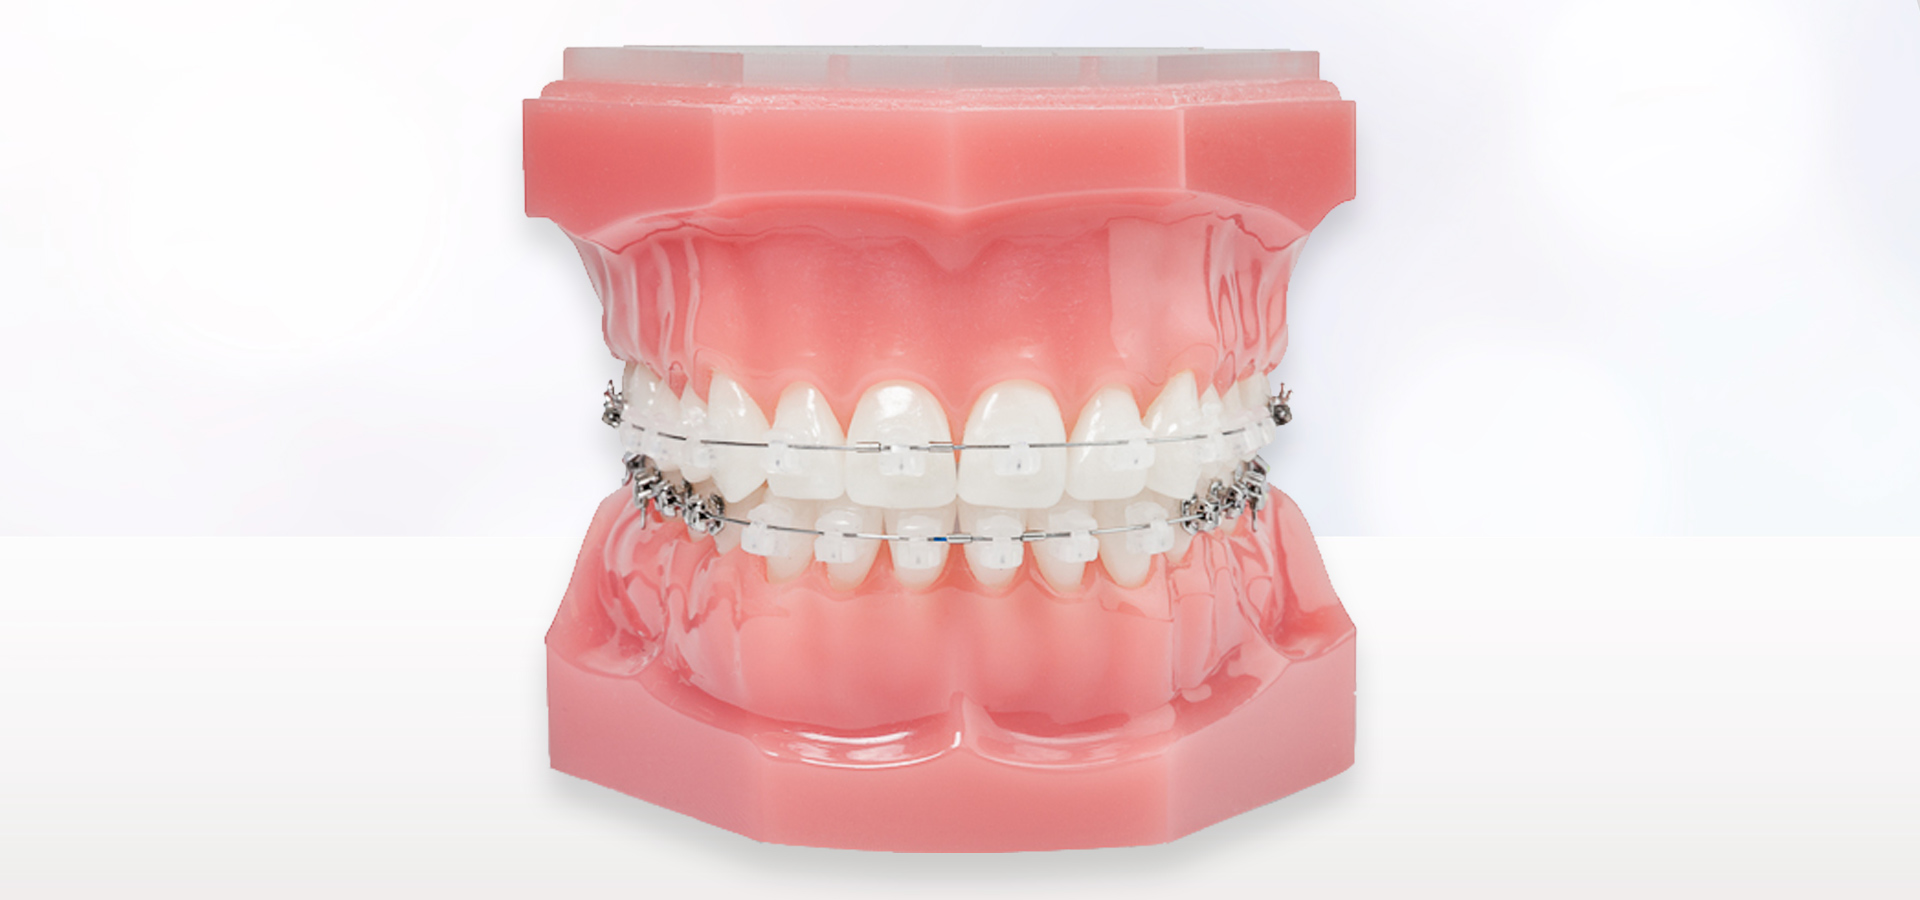 「痛みや不快感を軽減」効率的に歯を動かす治療システム